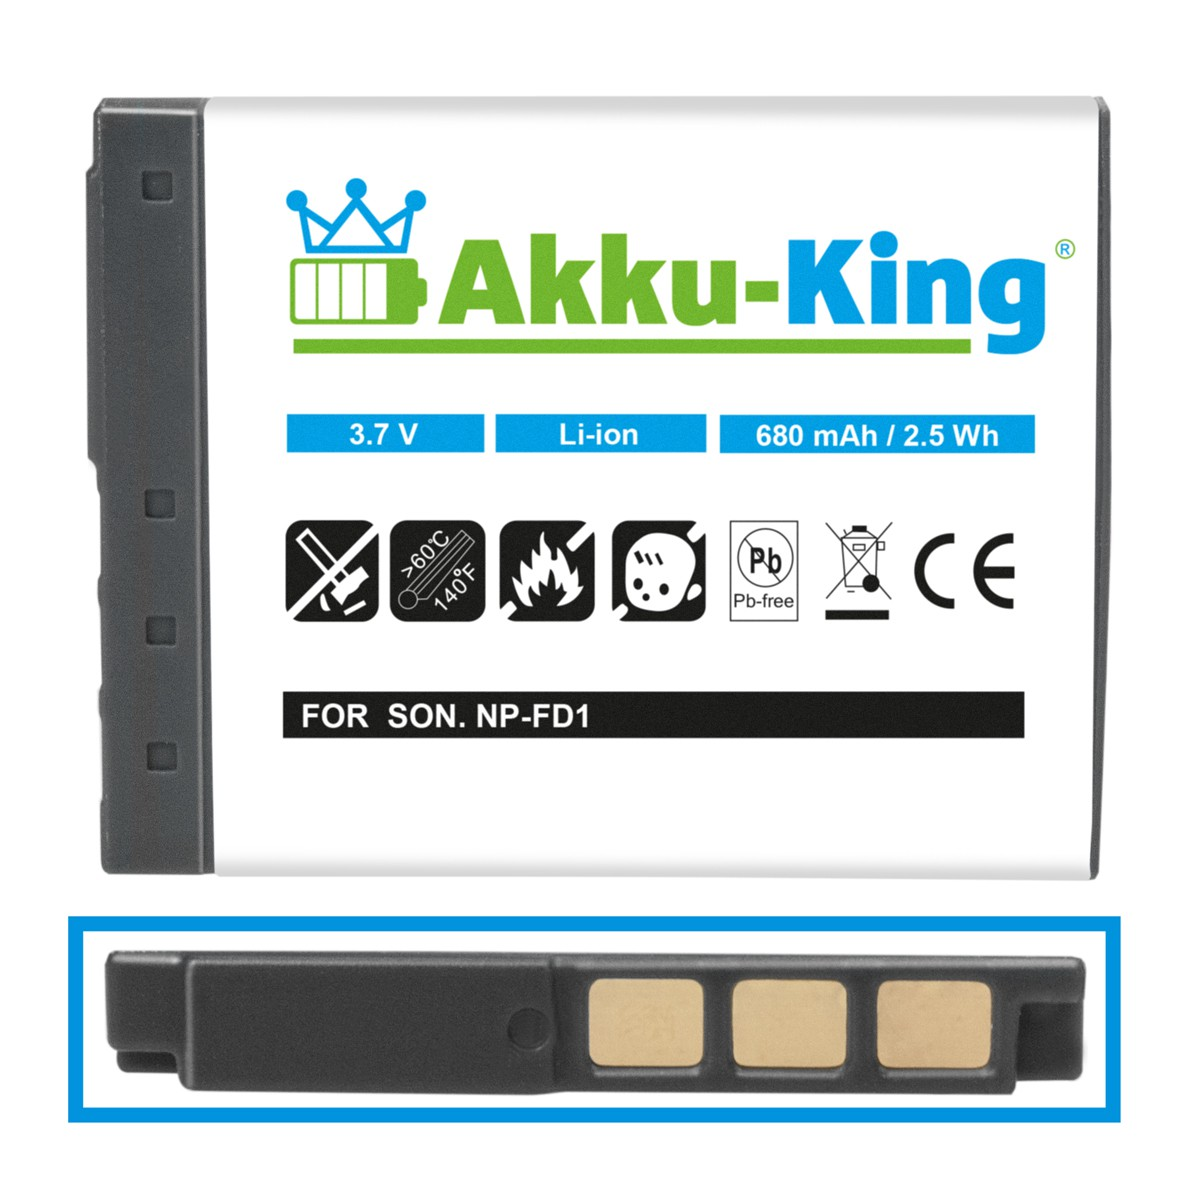 AKKU-KING Akku NP-FD1 680mAh Sony Li-Ion kompatibel mit Volt, Kamera-Akku, 3.7